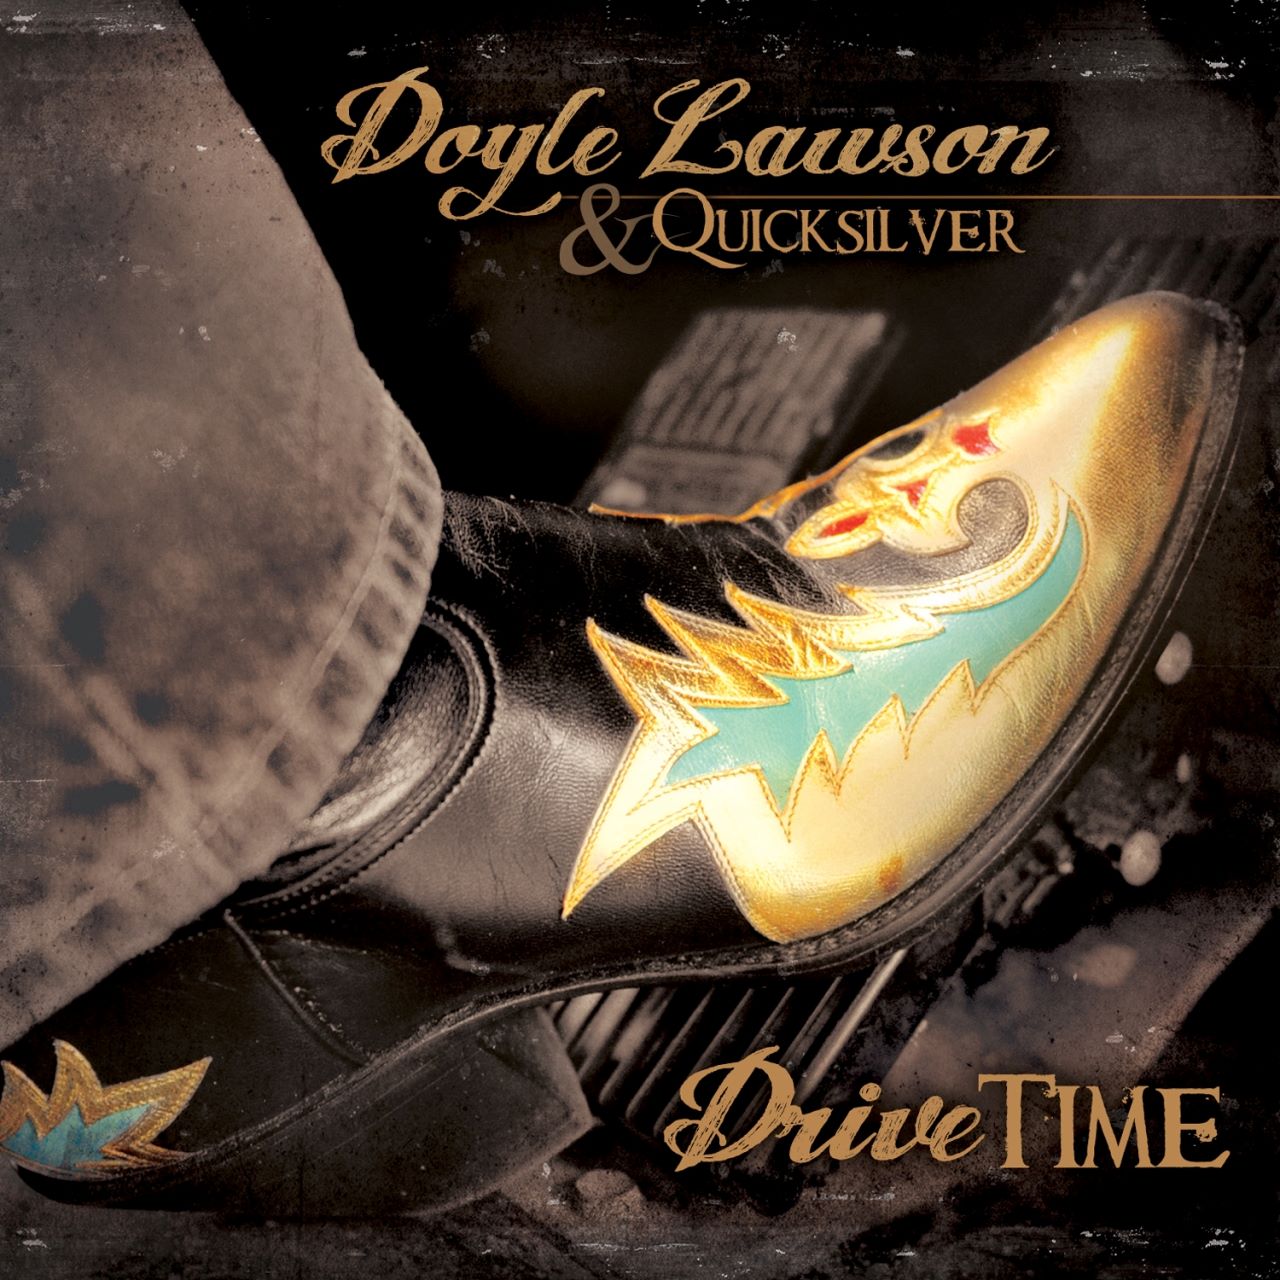 Doyle Lawson & Quicksilver - Drive Time cover album